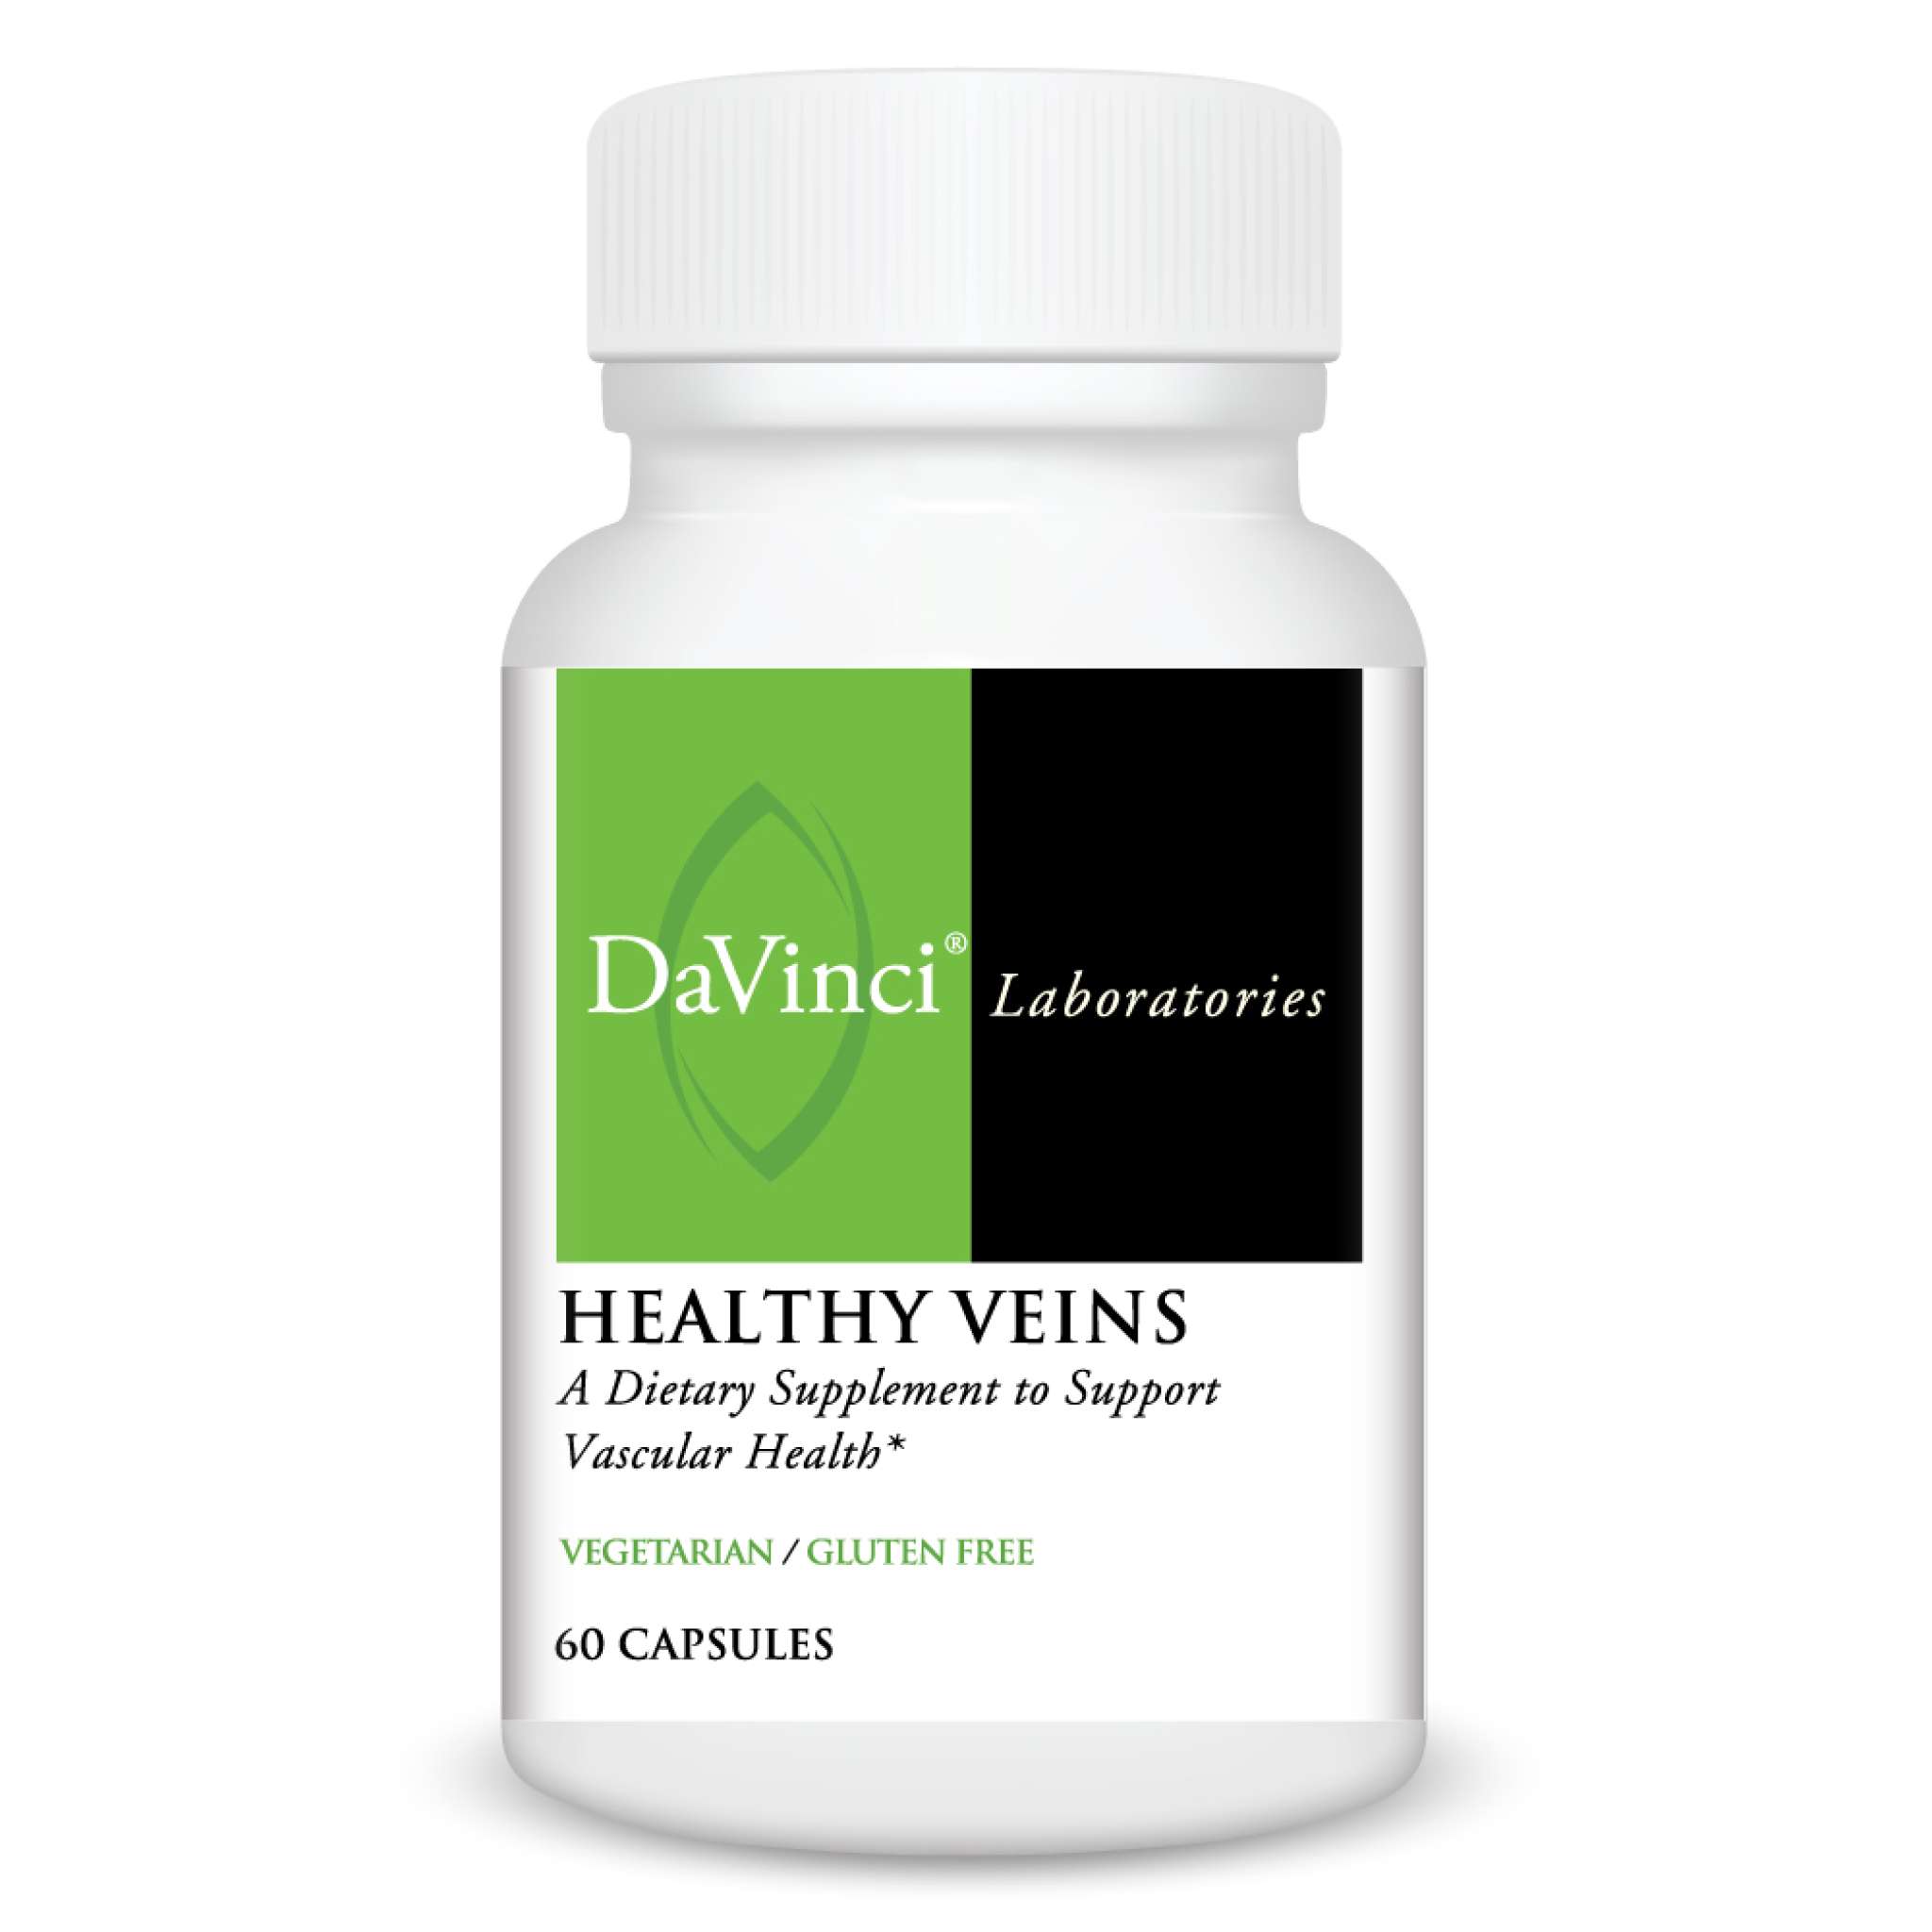 Davinci Laboratories - Healthy Veins